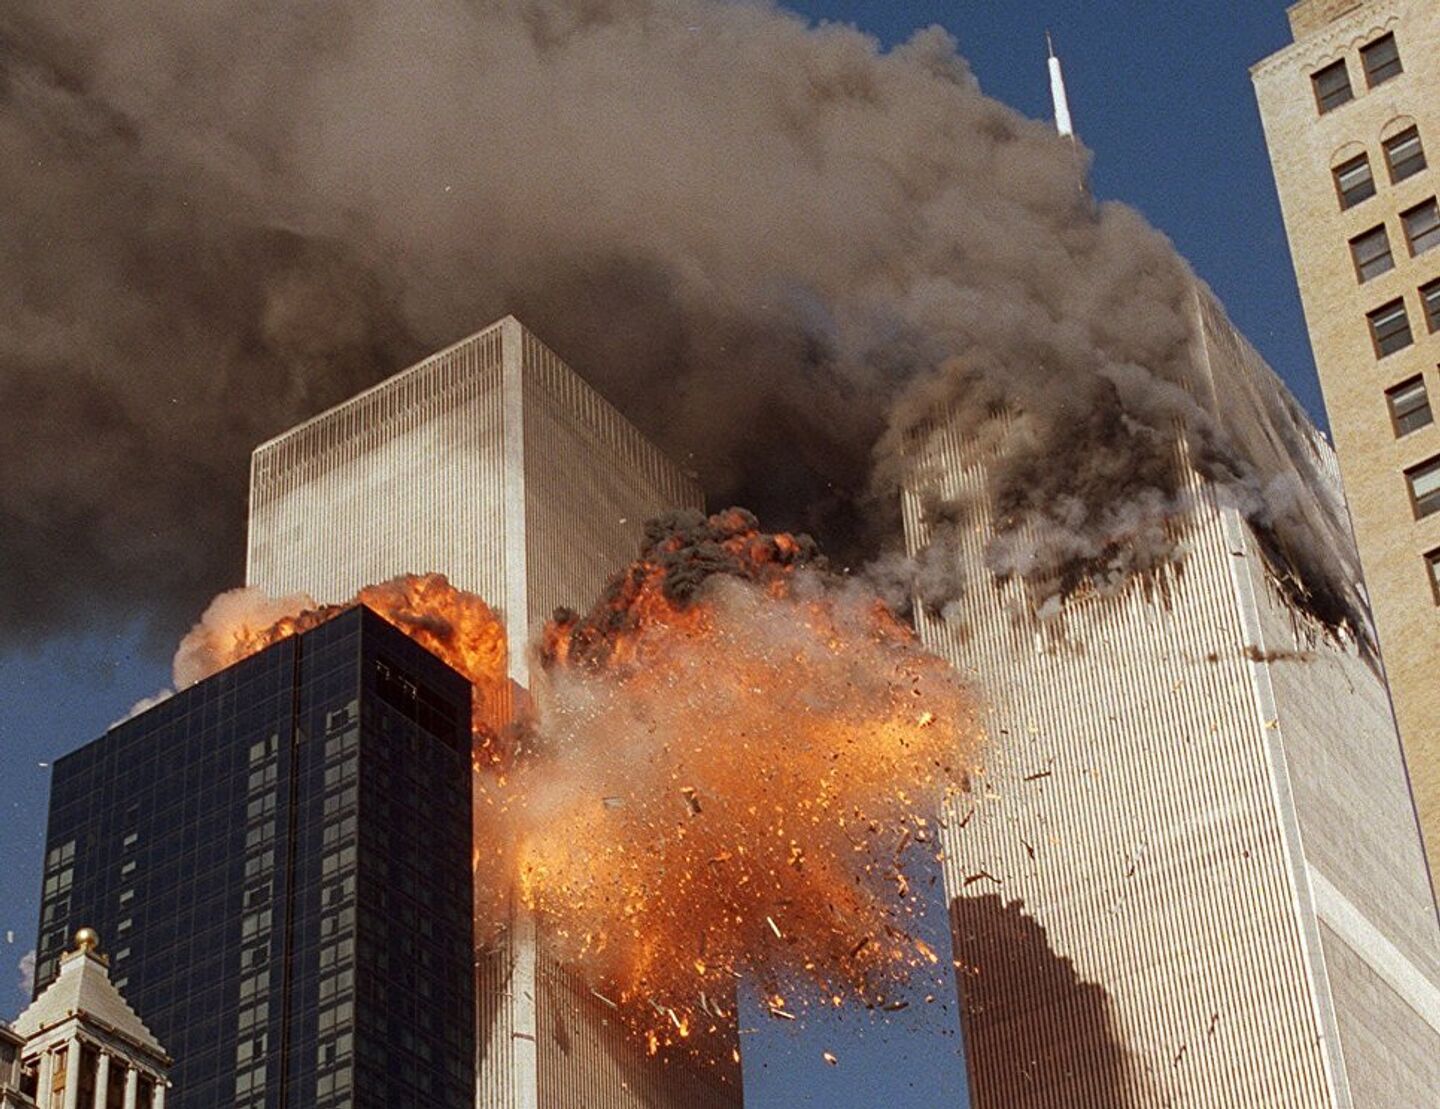 Теракт в 2001 году 11 сентября. Башни-Близнецы 11 сентября 2001. ВТЦ Нью-Йорк 2001. Башни Близнецы в Нью-Йорке 11 сентября.